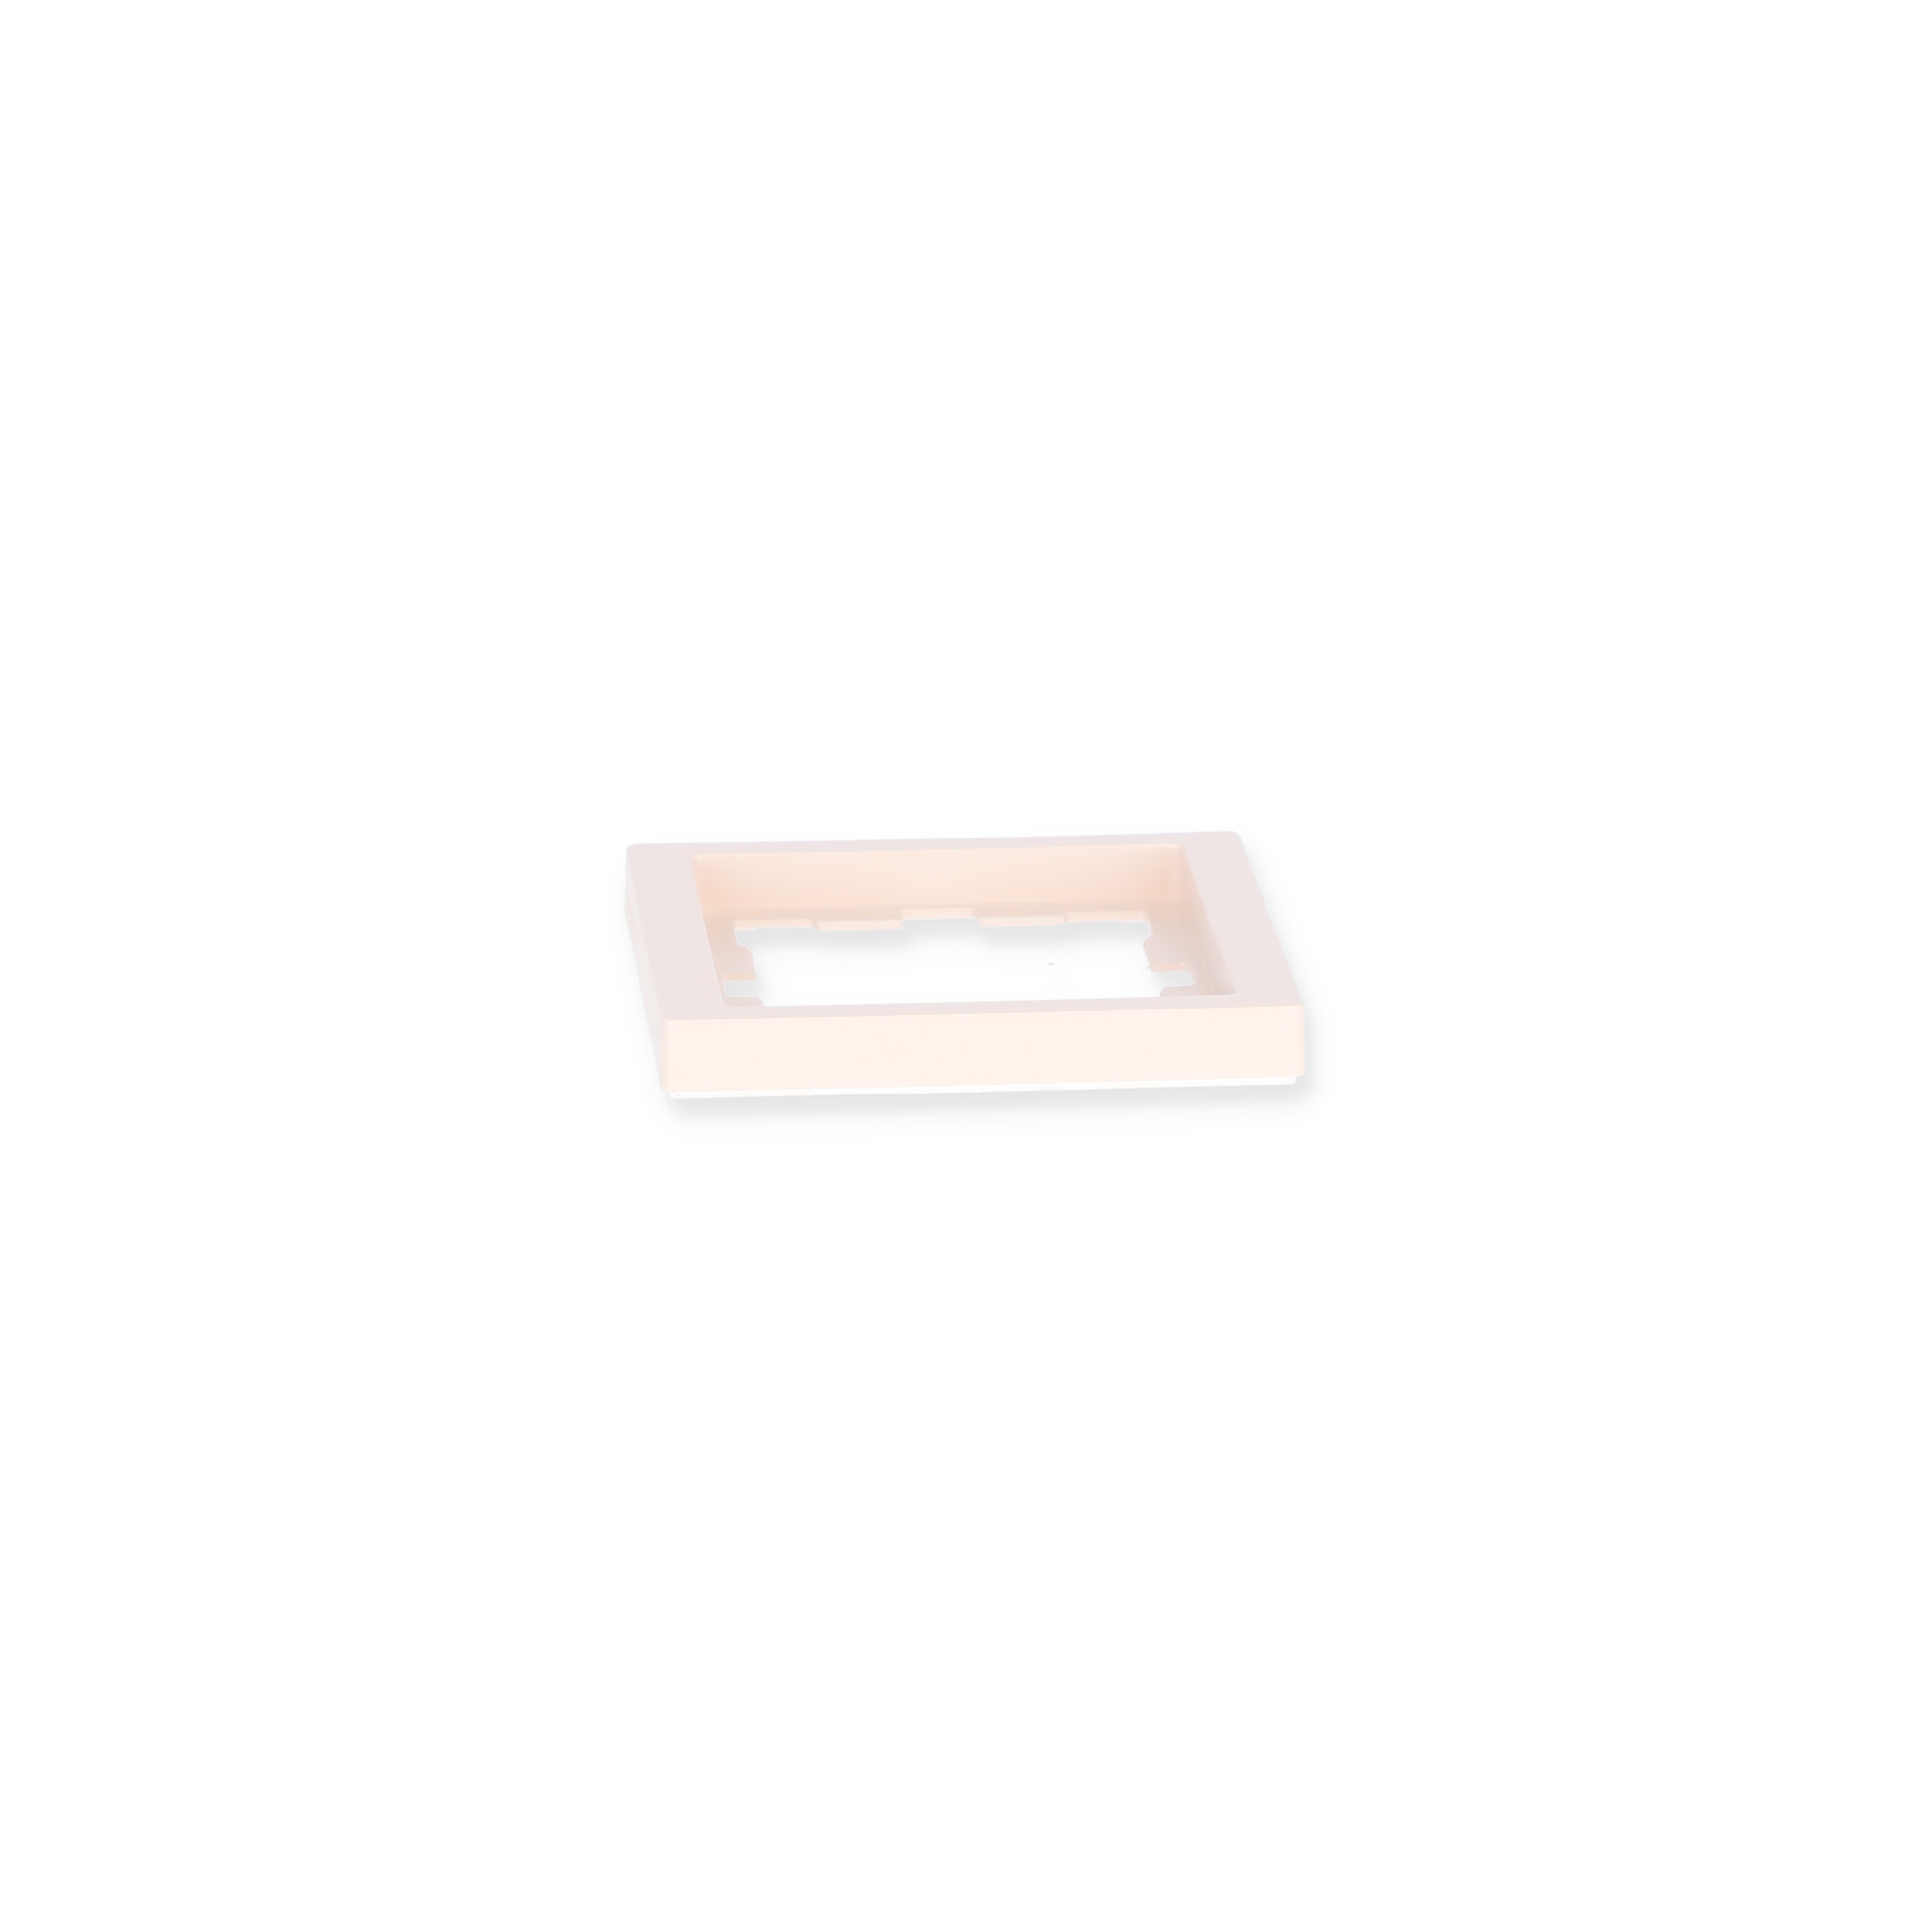 Abdeckrahmen 'D-Life' 1-fach beige 9 x 9 cm + product picture